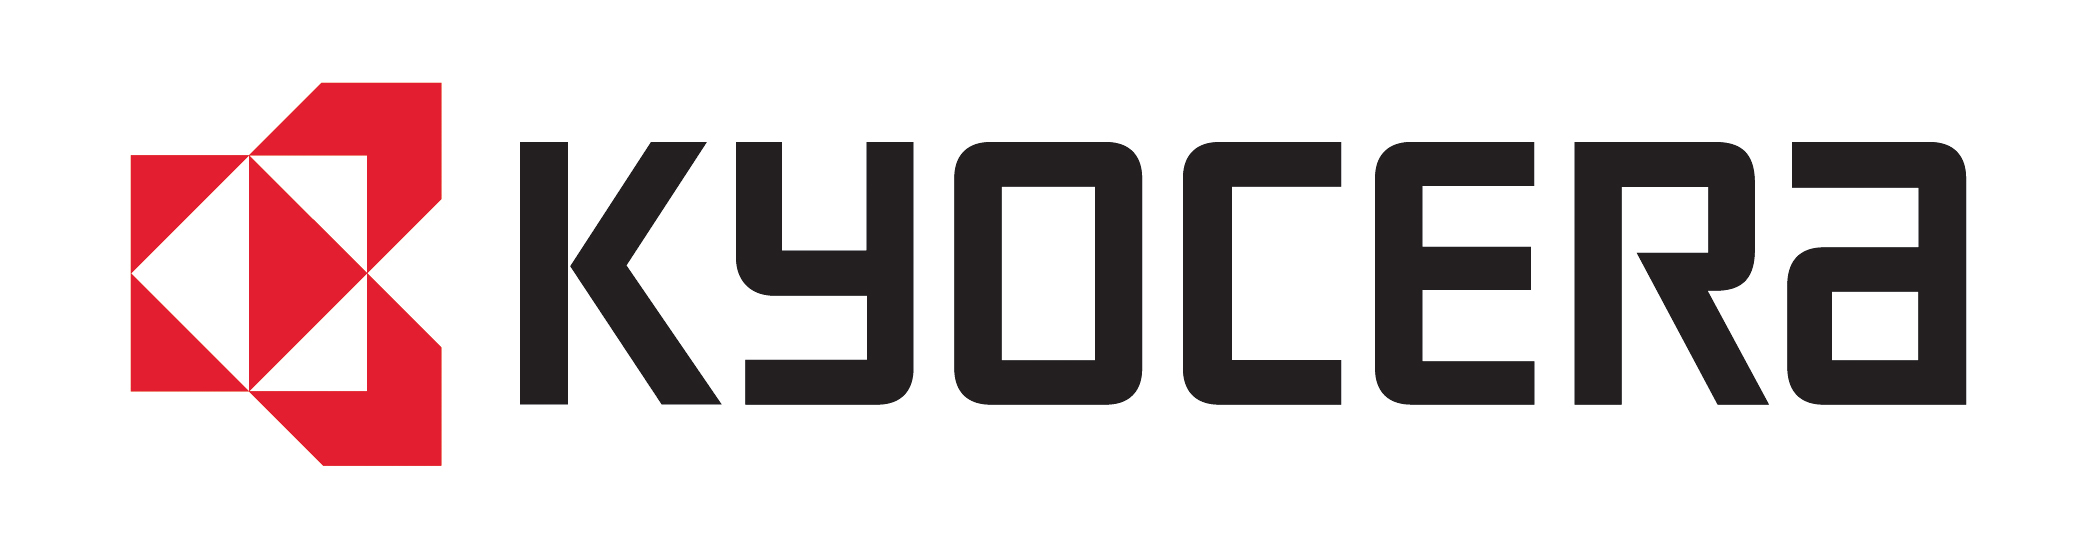 Kyocera Mita vector logo - Ky